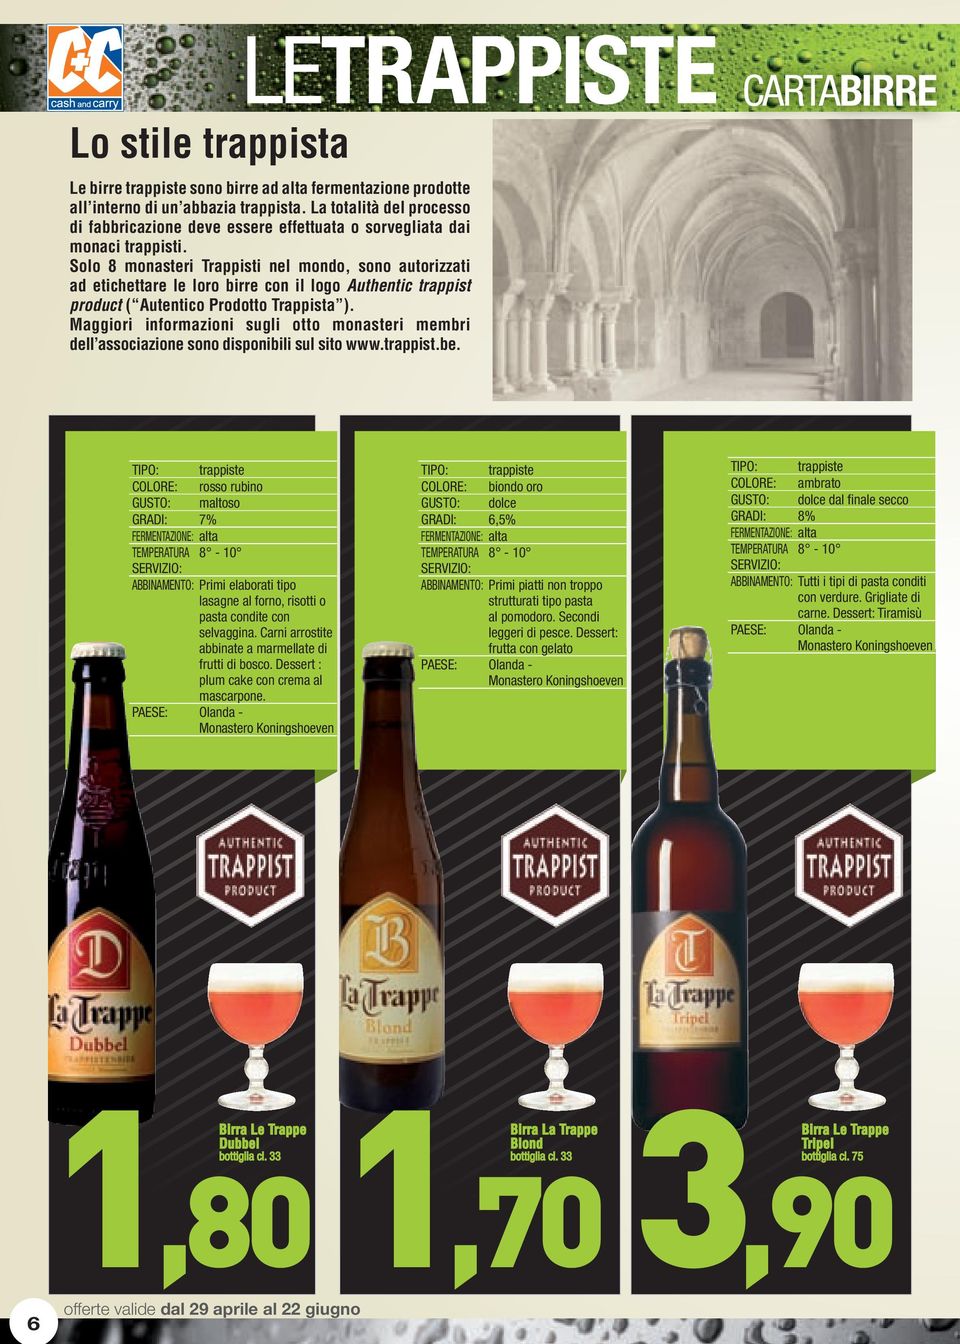 Solo 8 monasteri Trappisti nel mondo, sono autorizzati ad etichettare le loro birre con il logo Authentic trappist product ( Autentico Prodotto Trappista ).